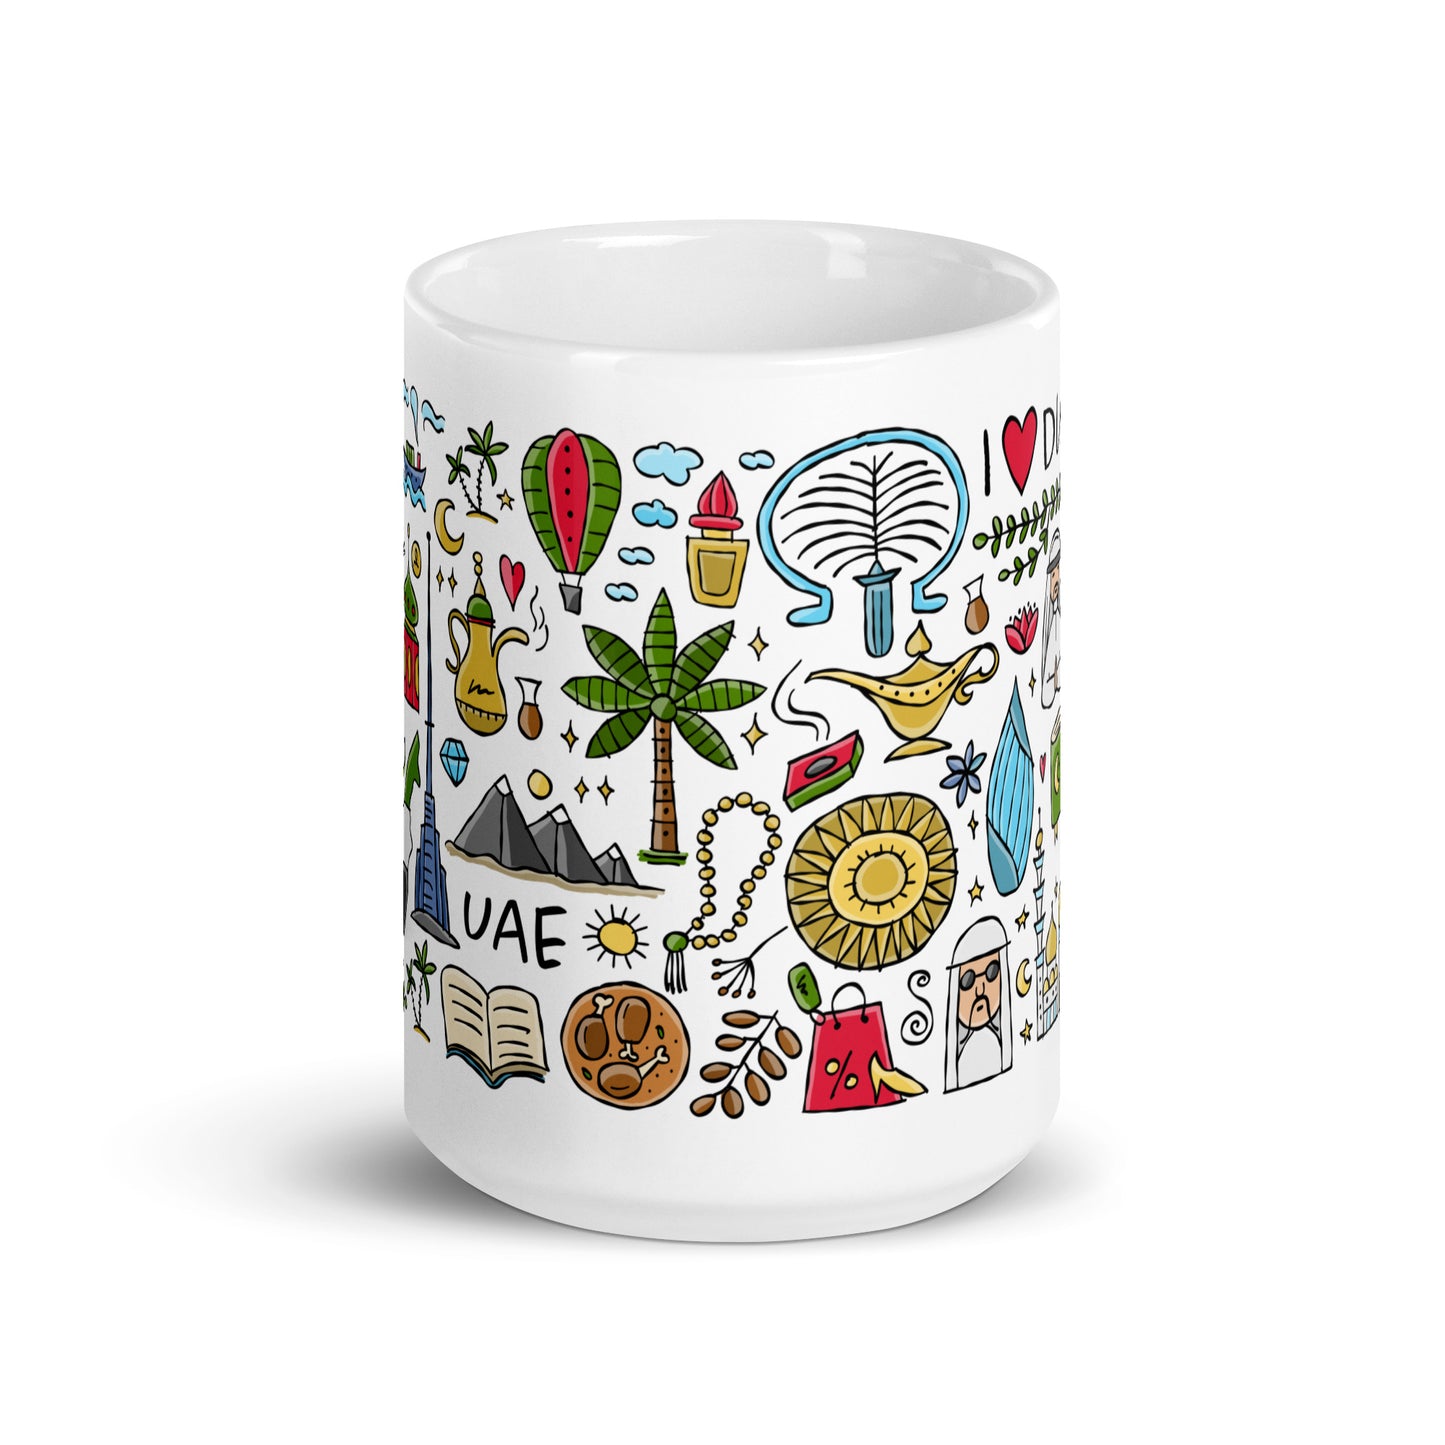 White glossy mug Dubai